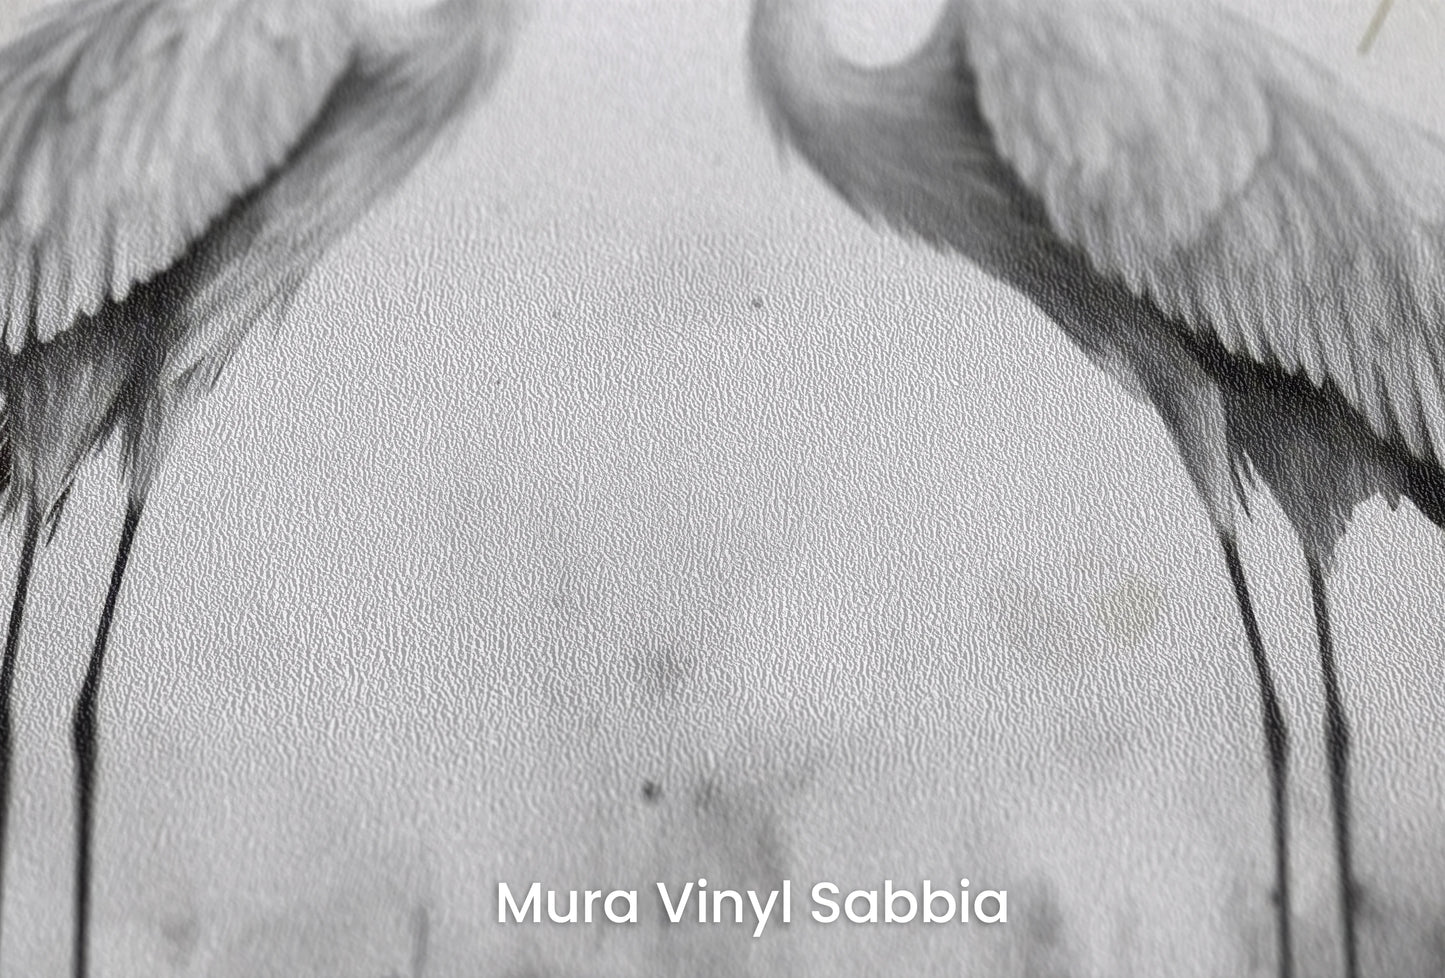 Zbliżenie na artystyczną fototapetę o nazwie Starry Harmony na podłożu Mura Vinyl Sabbia struktura grubego ziarna piasku.